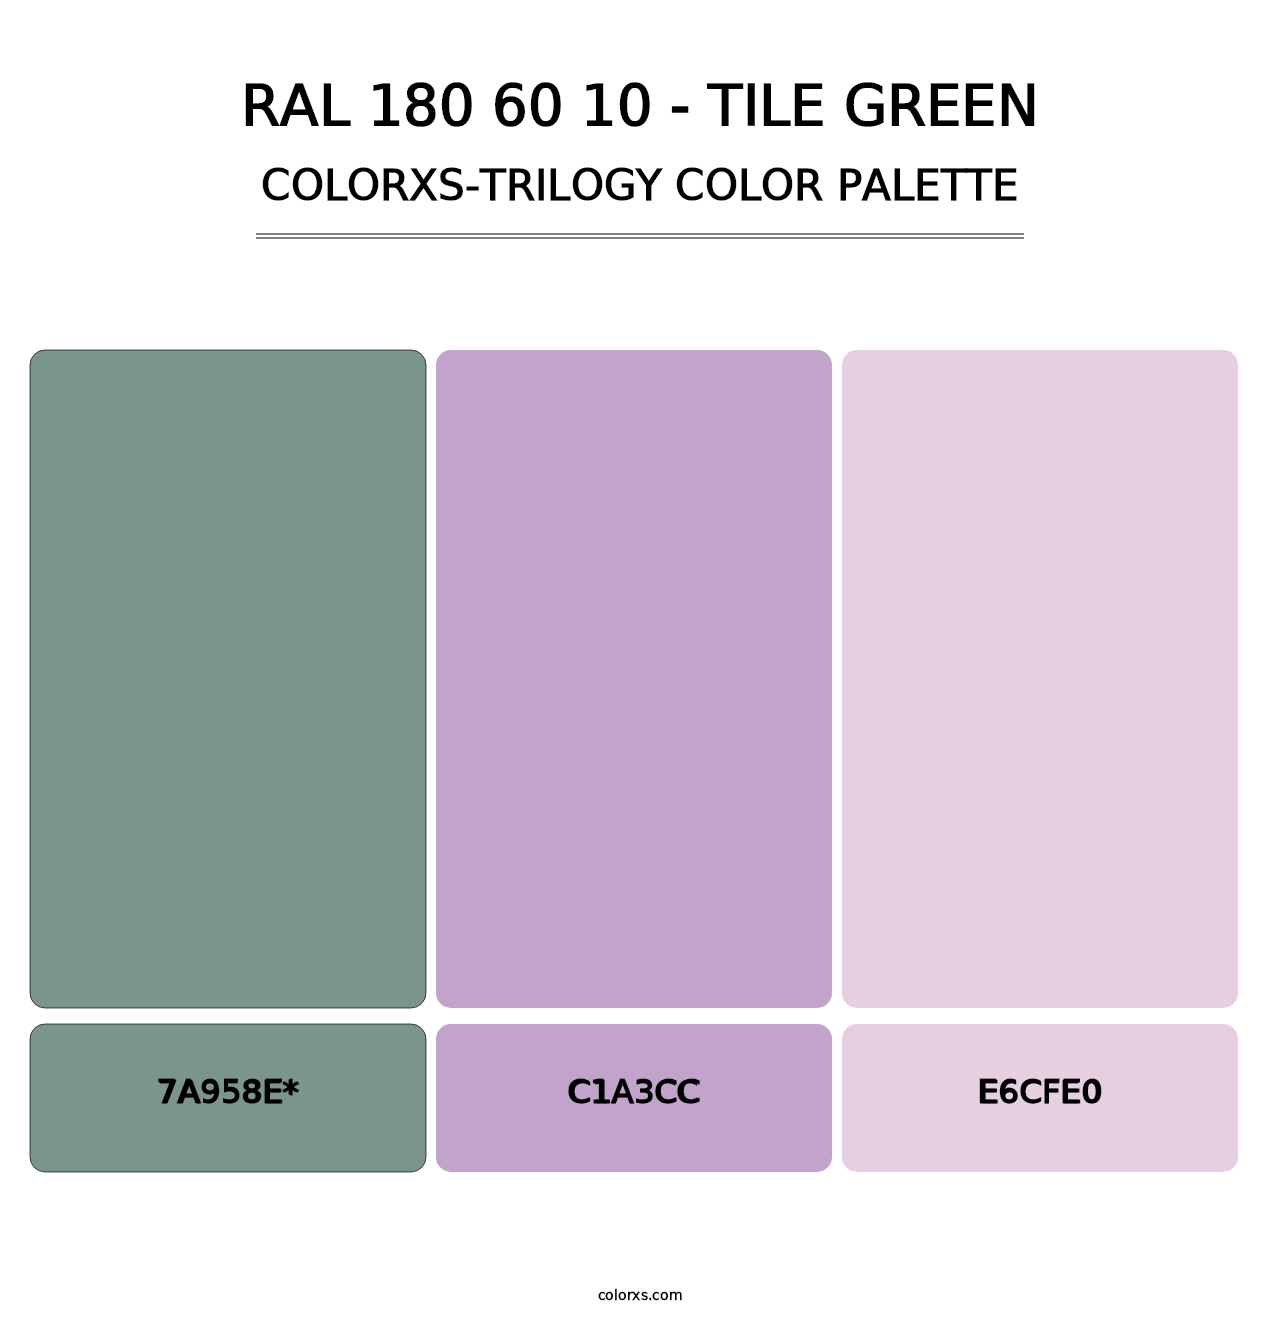 RAL 180 60 10 - Tile Green - Colorxs Trilogy Palette